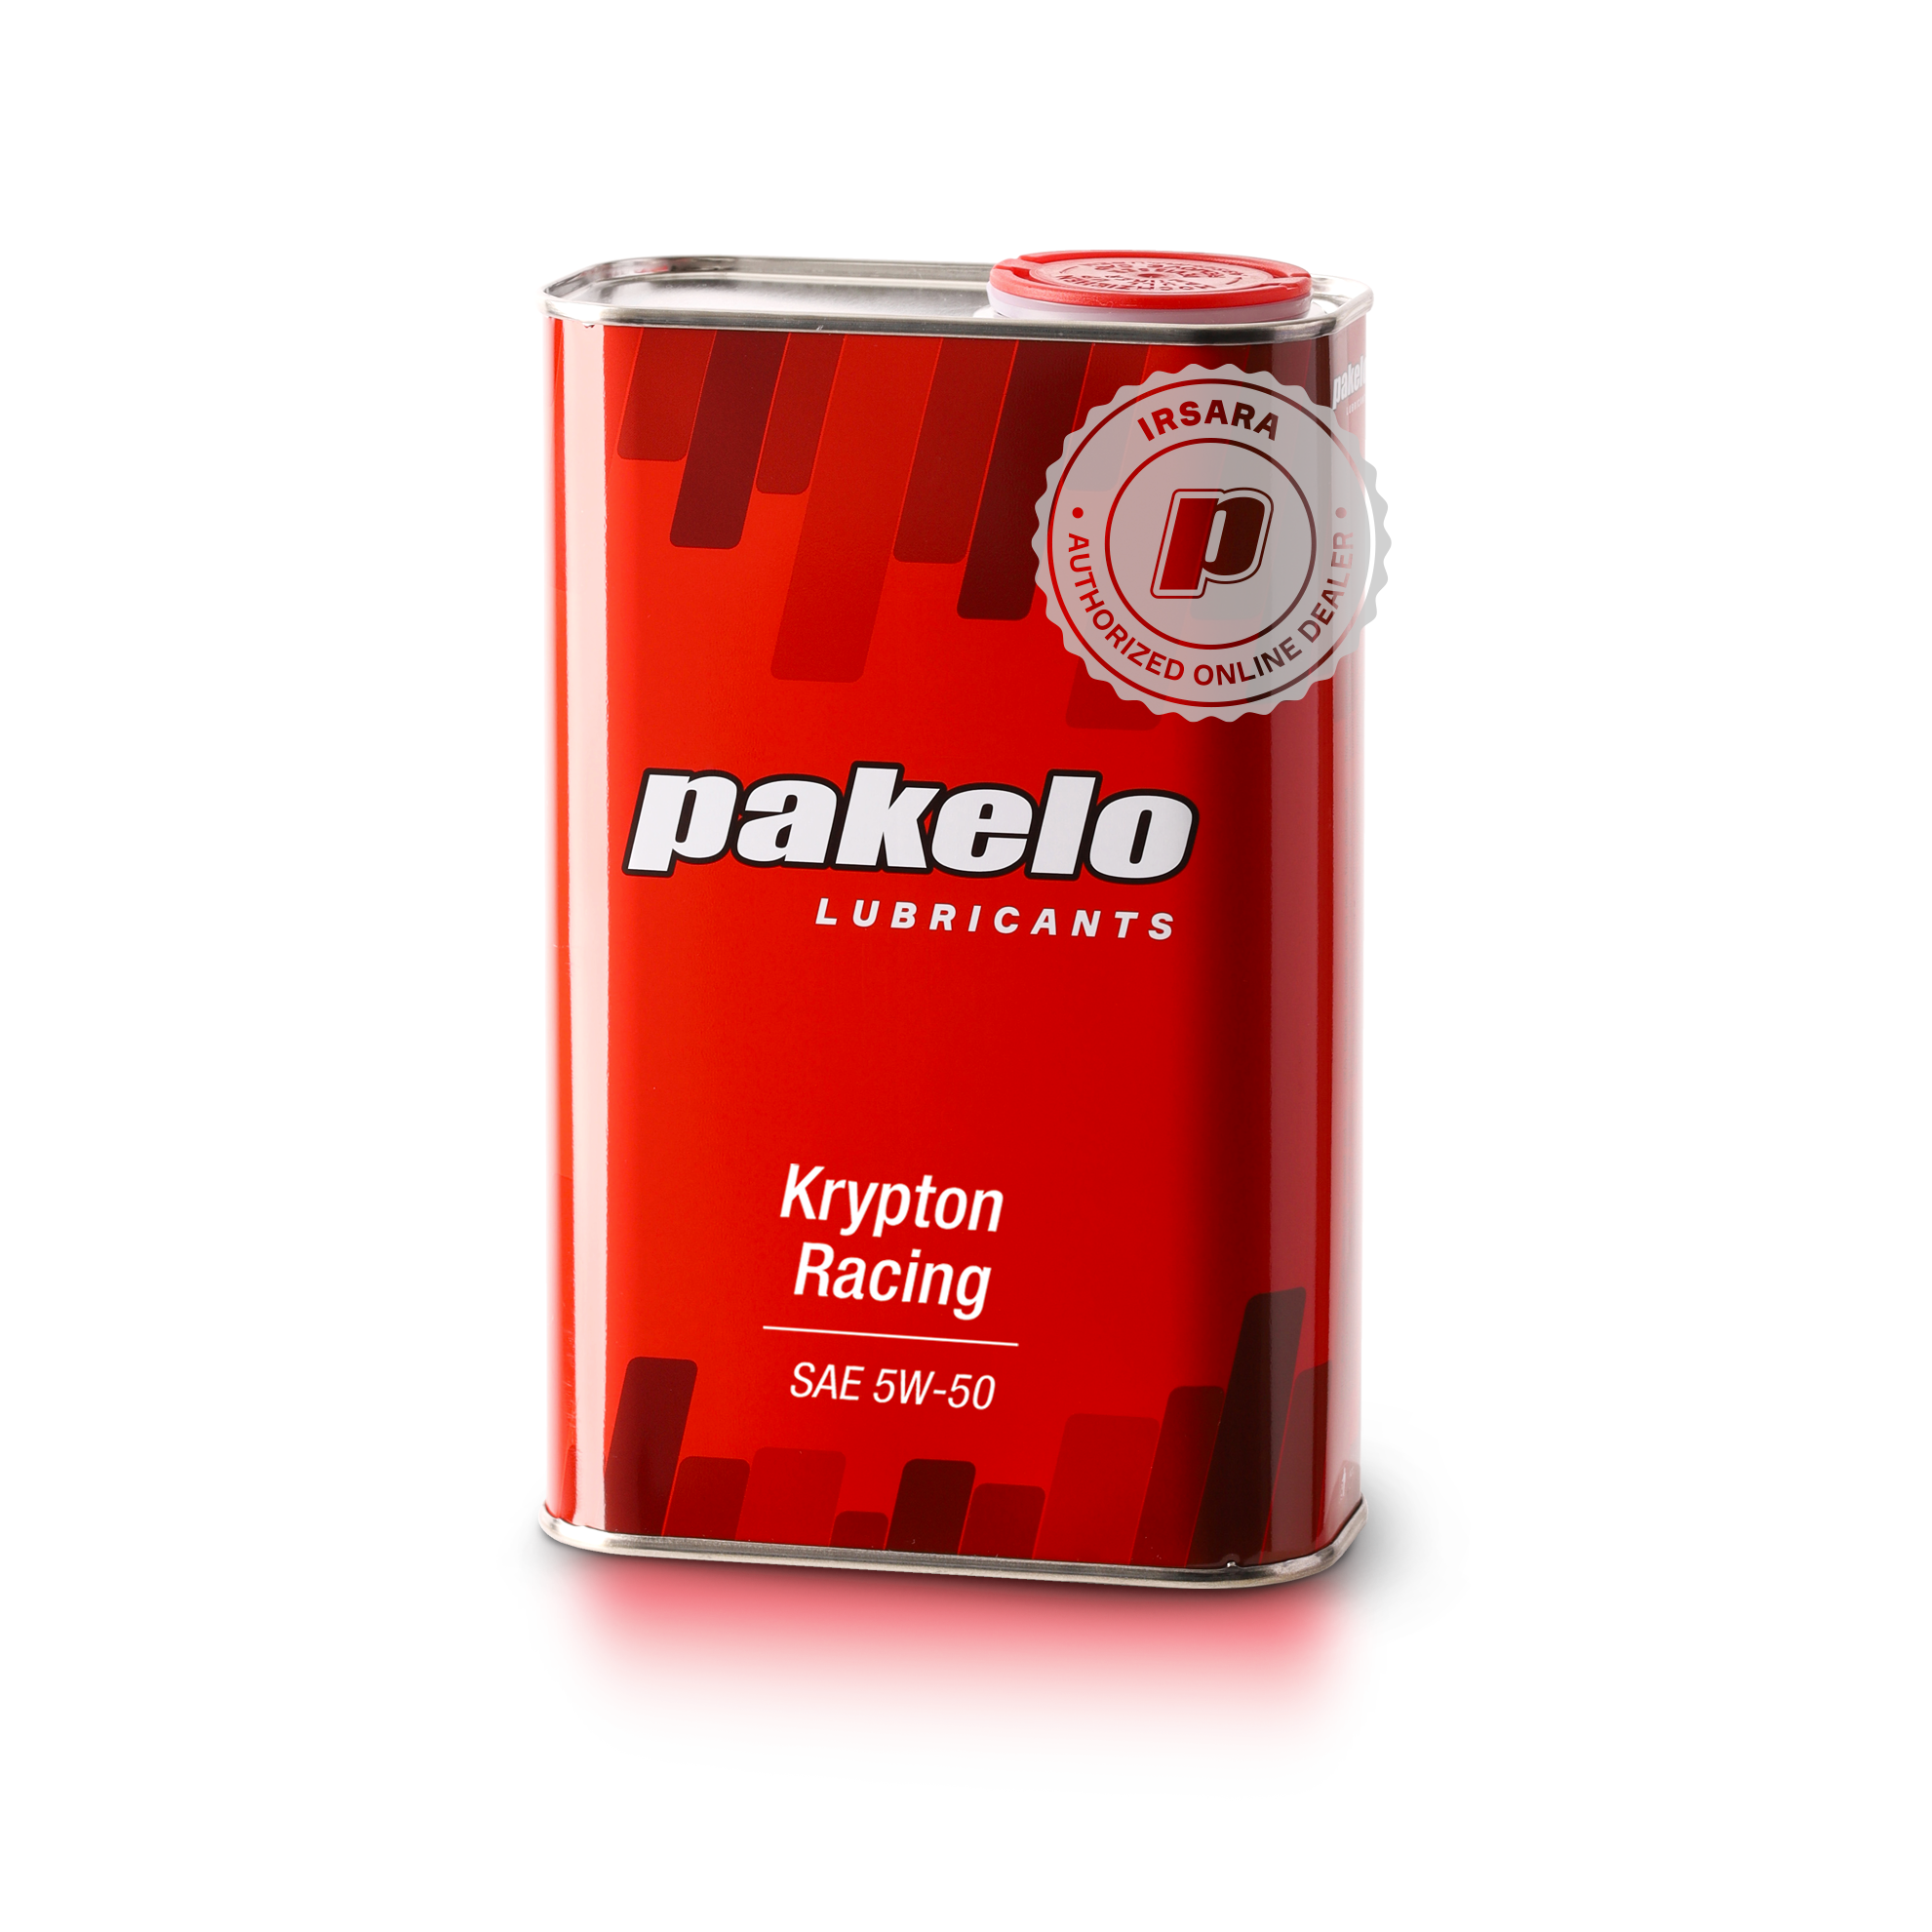 Pakelo Krypton Racing Sae 5W/50 (1 Lt)